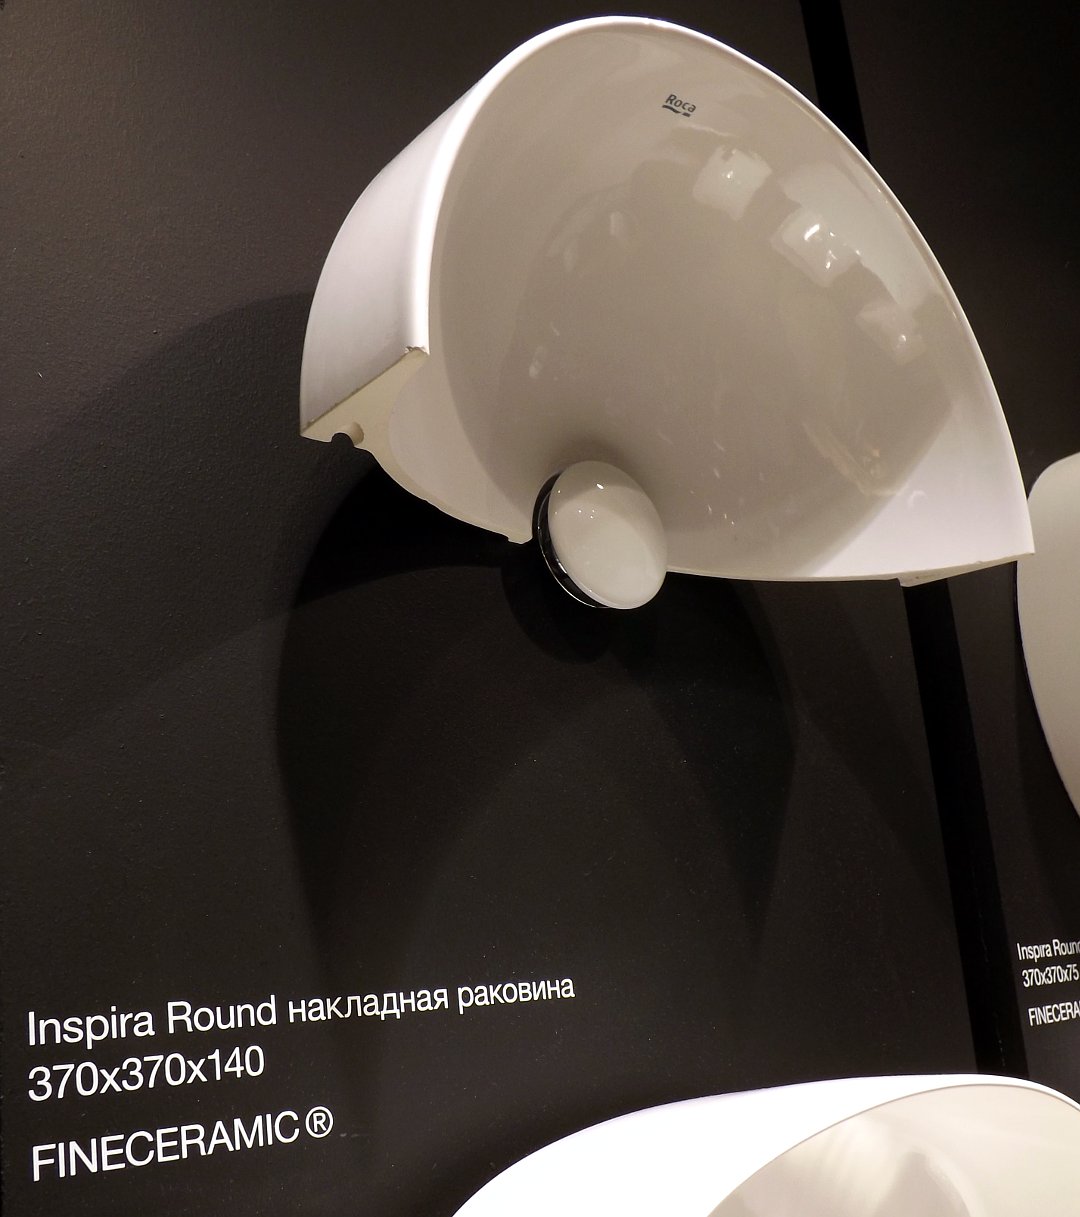 Часть накладной раковины из материала FINECERAMIC в формате ROUND из коллекции INSPIRA от Roca, представленная на выставке MosBuild 2016